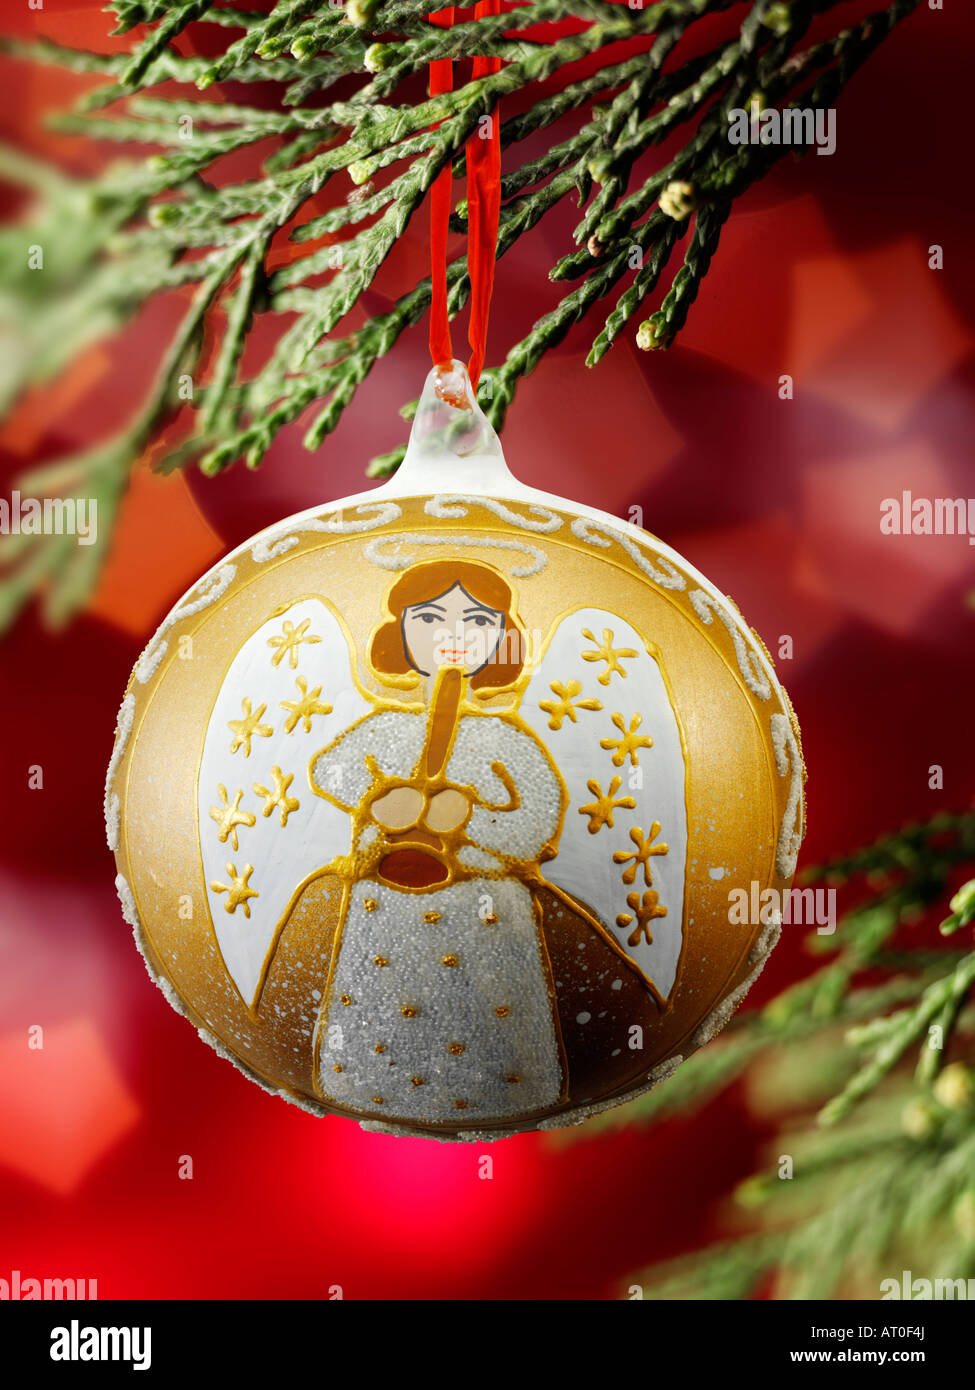 Traditionelle festlich geschmückte Weihnachtsengel-Kugel, die an Weihnachten hängt Baum mit Lichtern dahinter Stockfoto